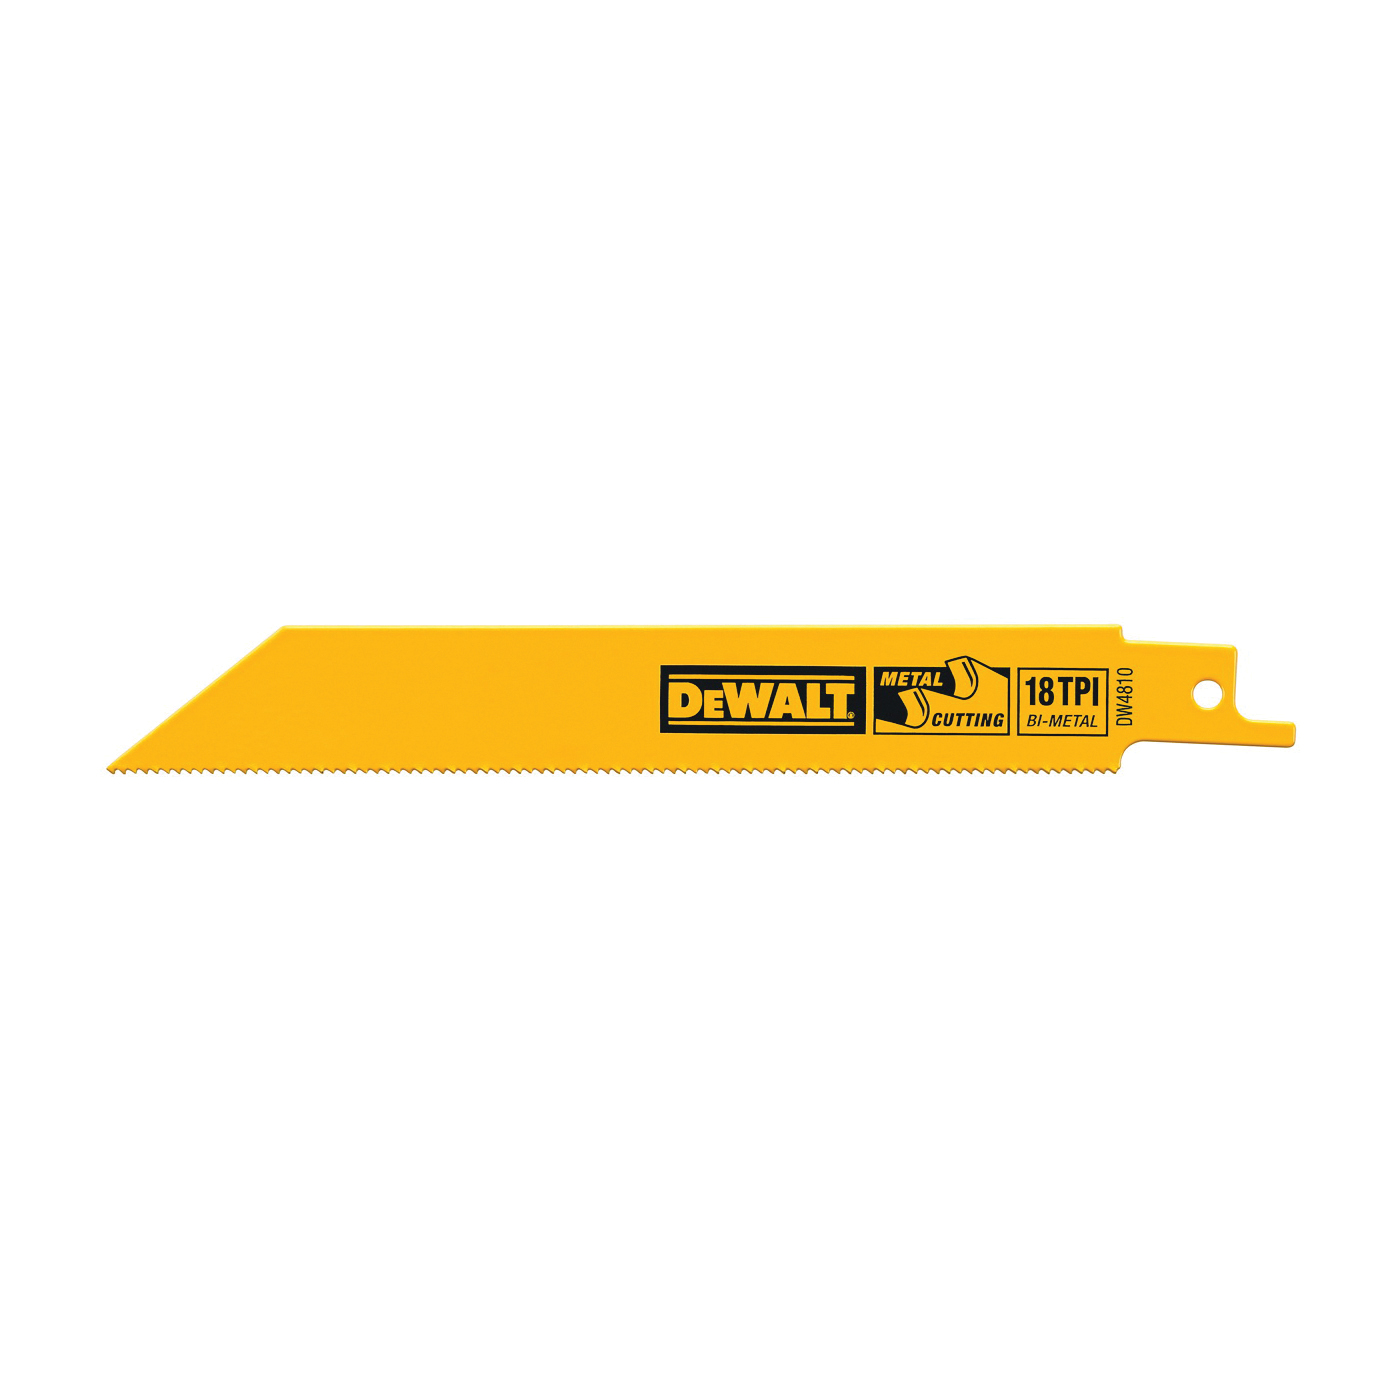 DeWALT DW4810 Reciprocating Saw Blade, 4 in L, 18 TPI